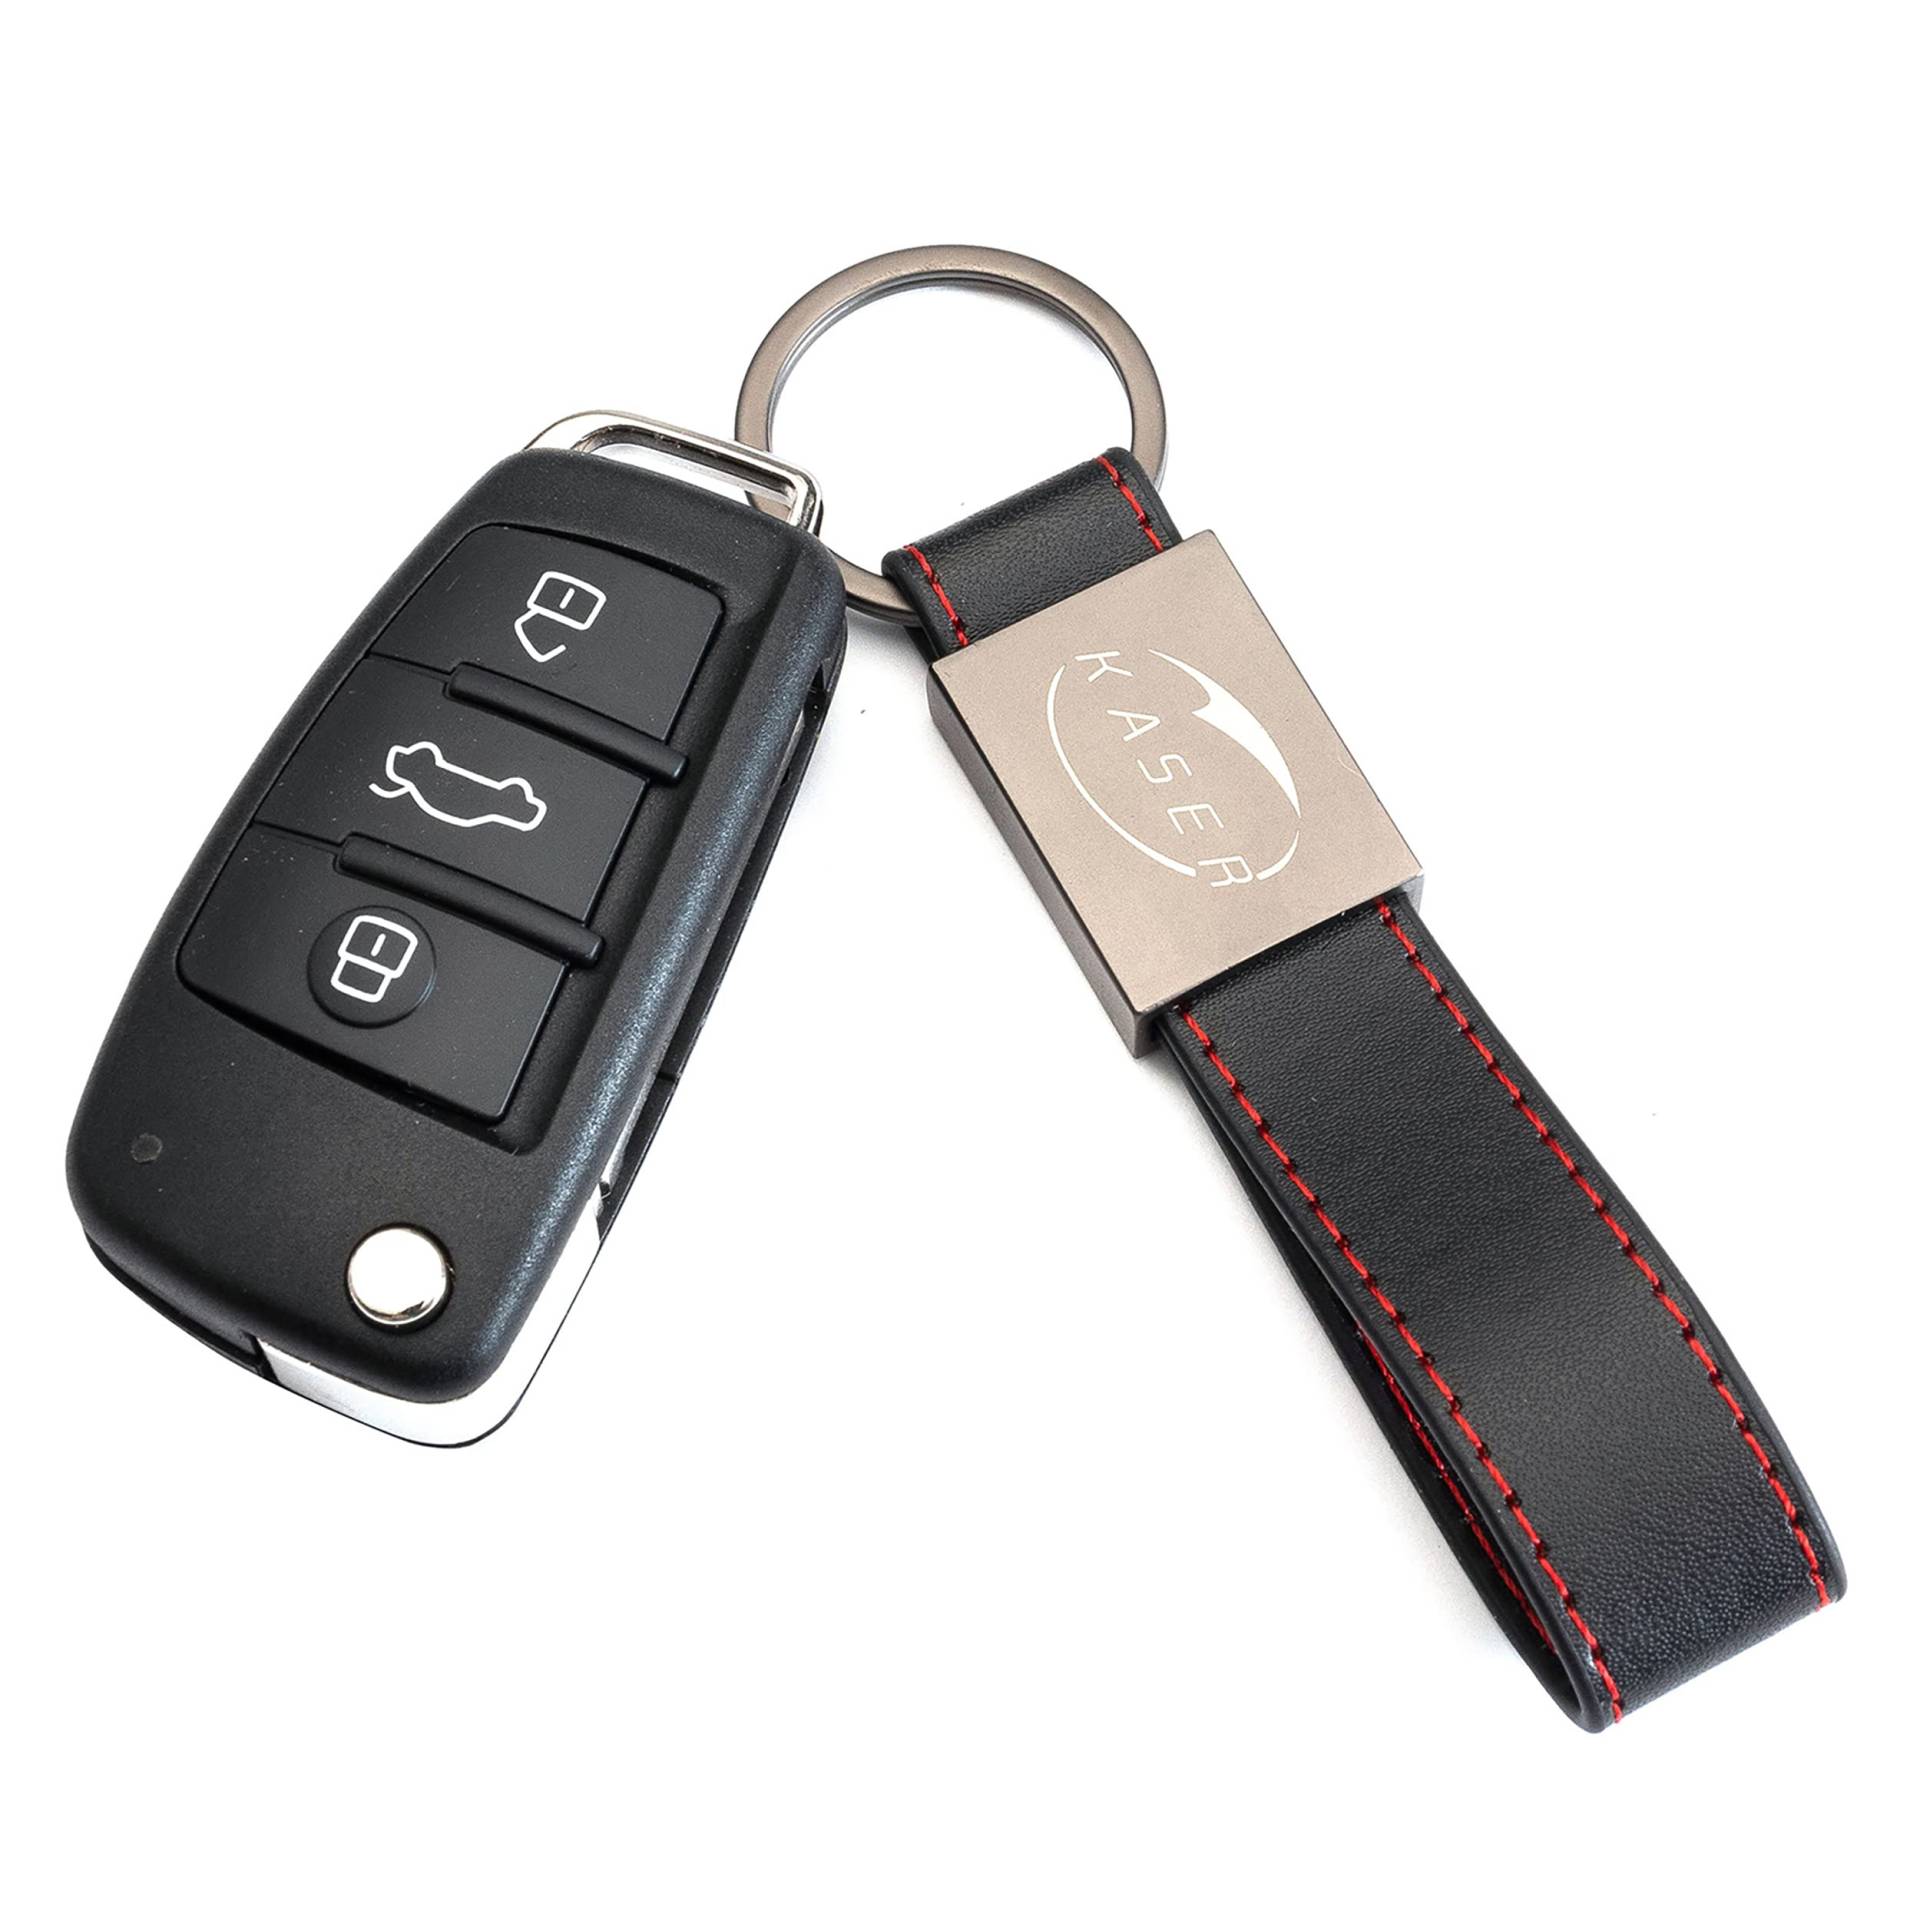 KASER Schlüssel Gehäuse Fernbedienung für Audi Autoschlüssel Funkschlüssel A1 A3 A4 A6 A8 Q3 Q5 Q7 (8X0837220D) mit Leder Schlüsselanhänger von Kaser